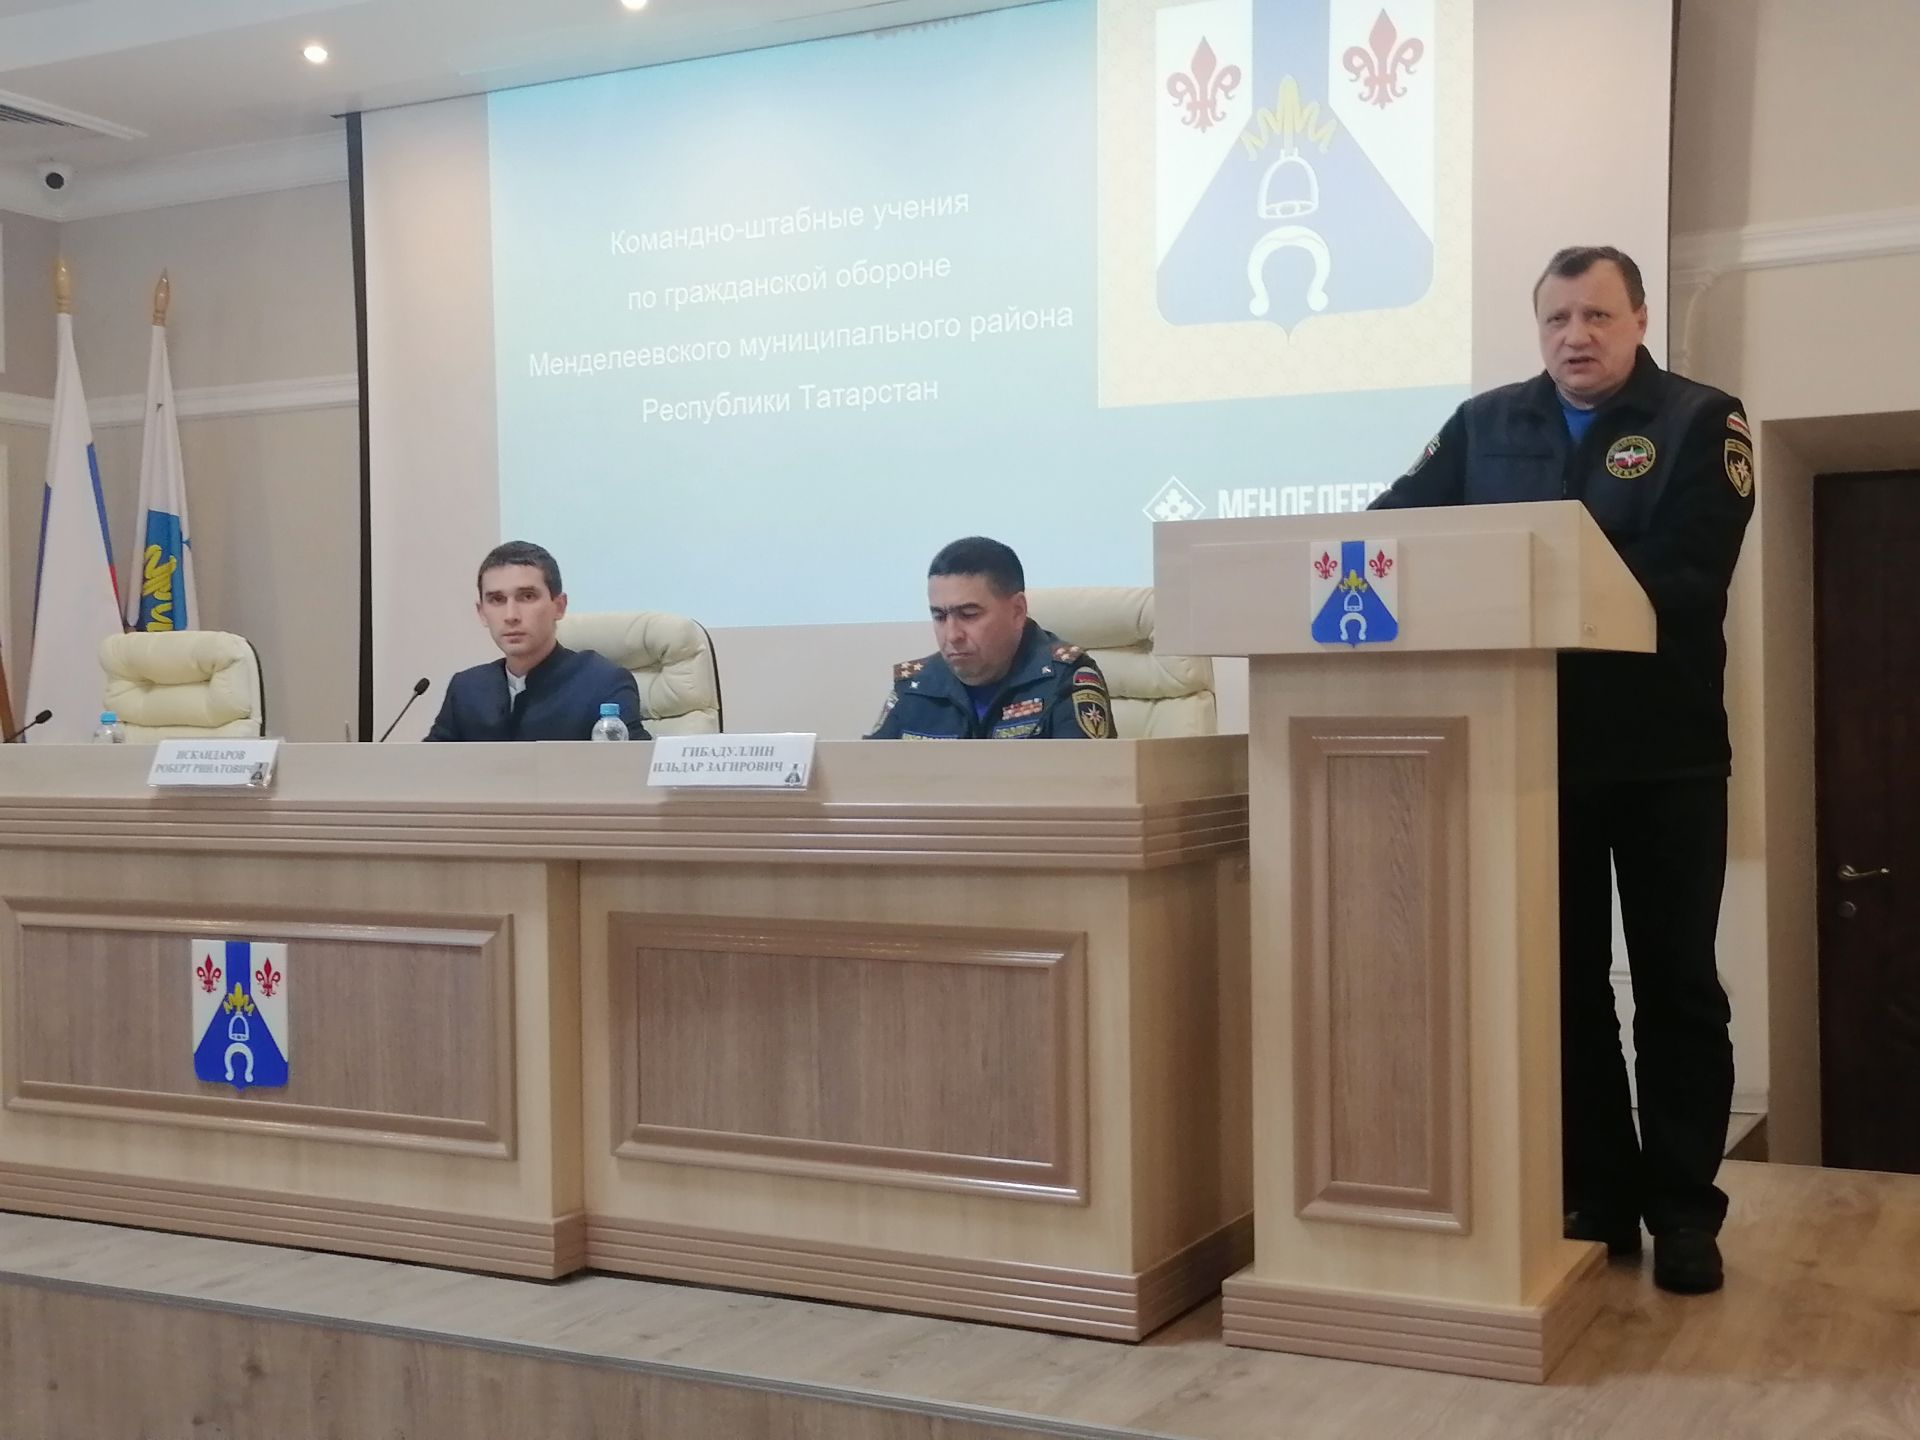 Первый день командно-штабных учений прошёл в Менделеевске на оценку «хорошо»